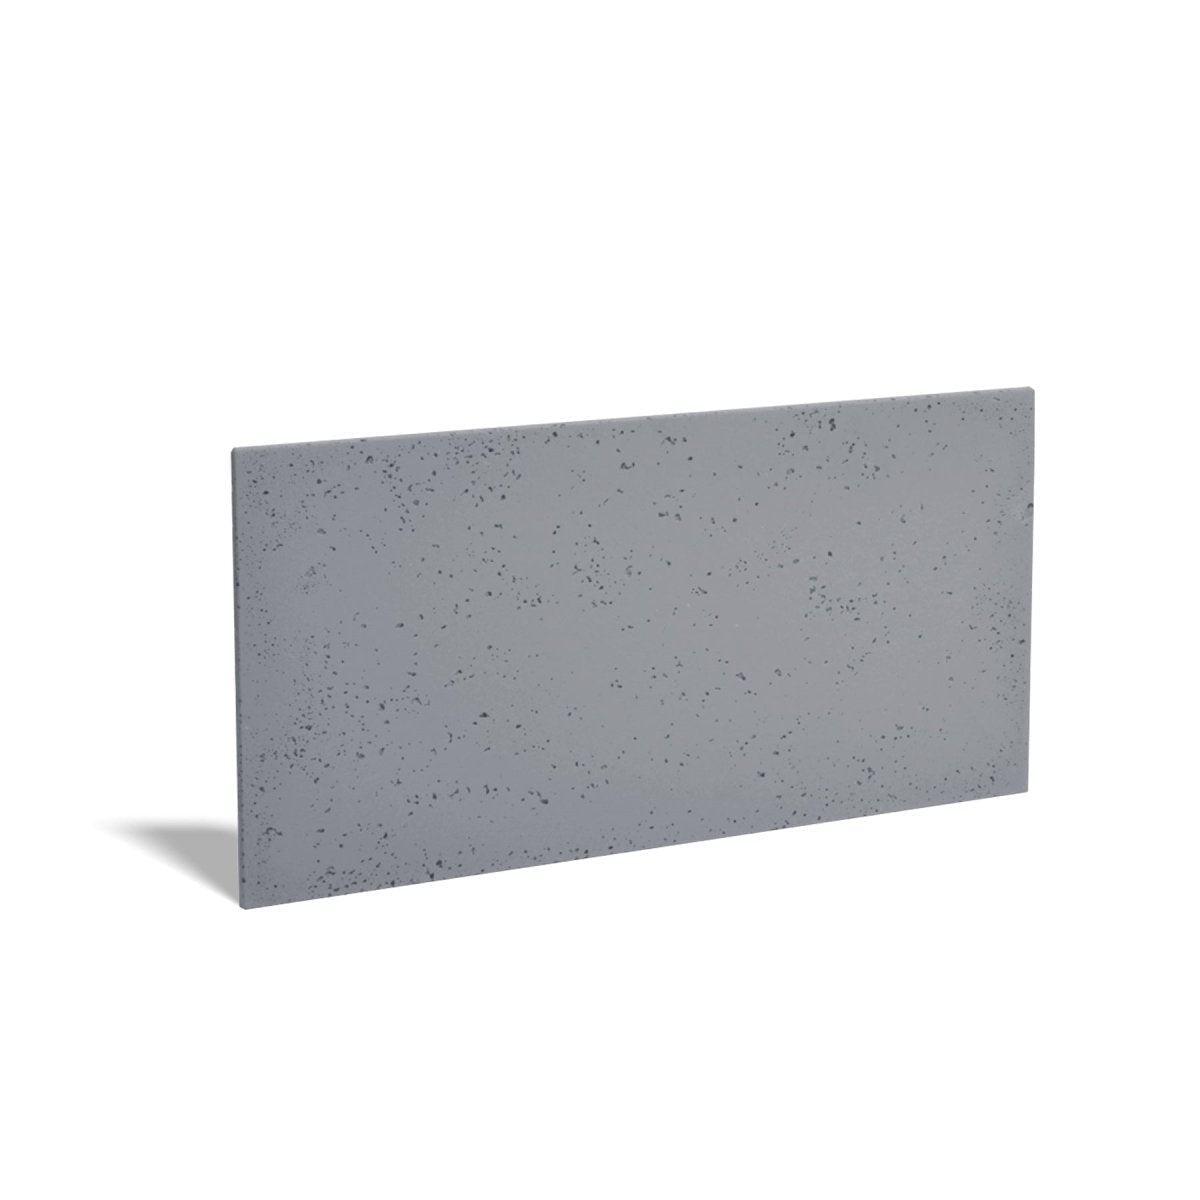 2D Concrete wall panels-DecorMania.eu